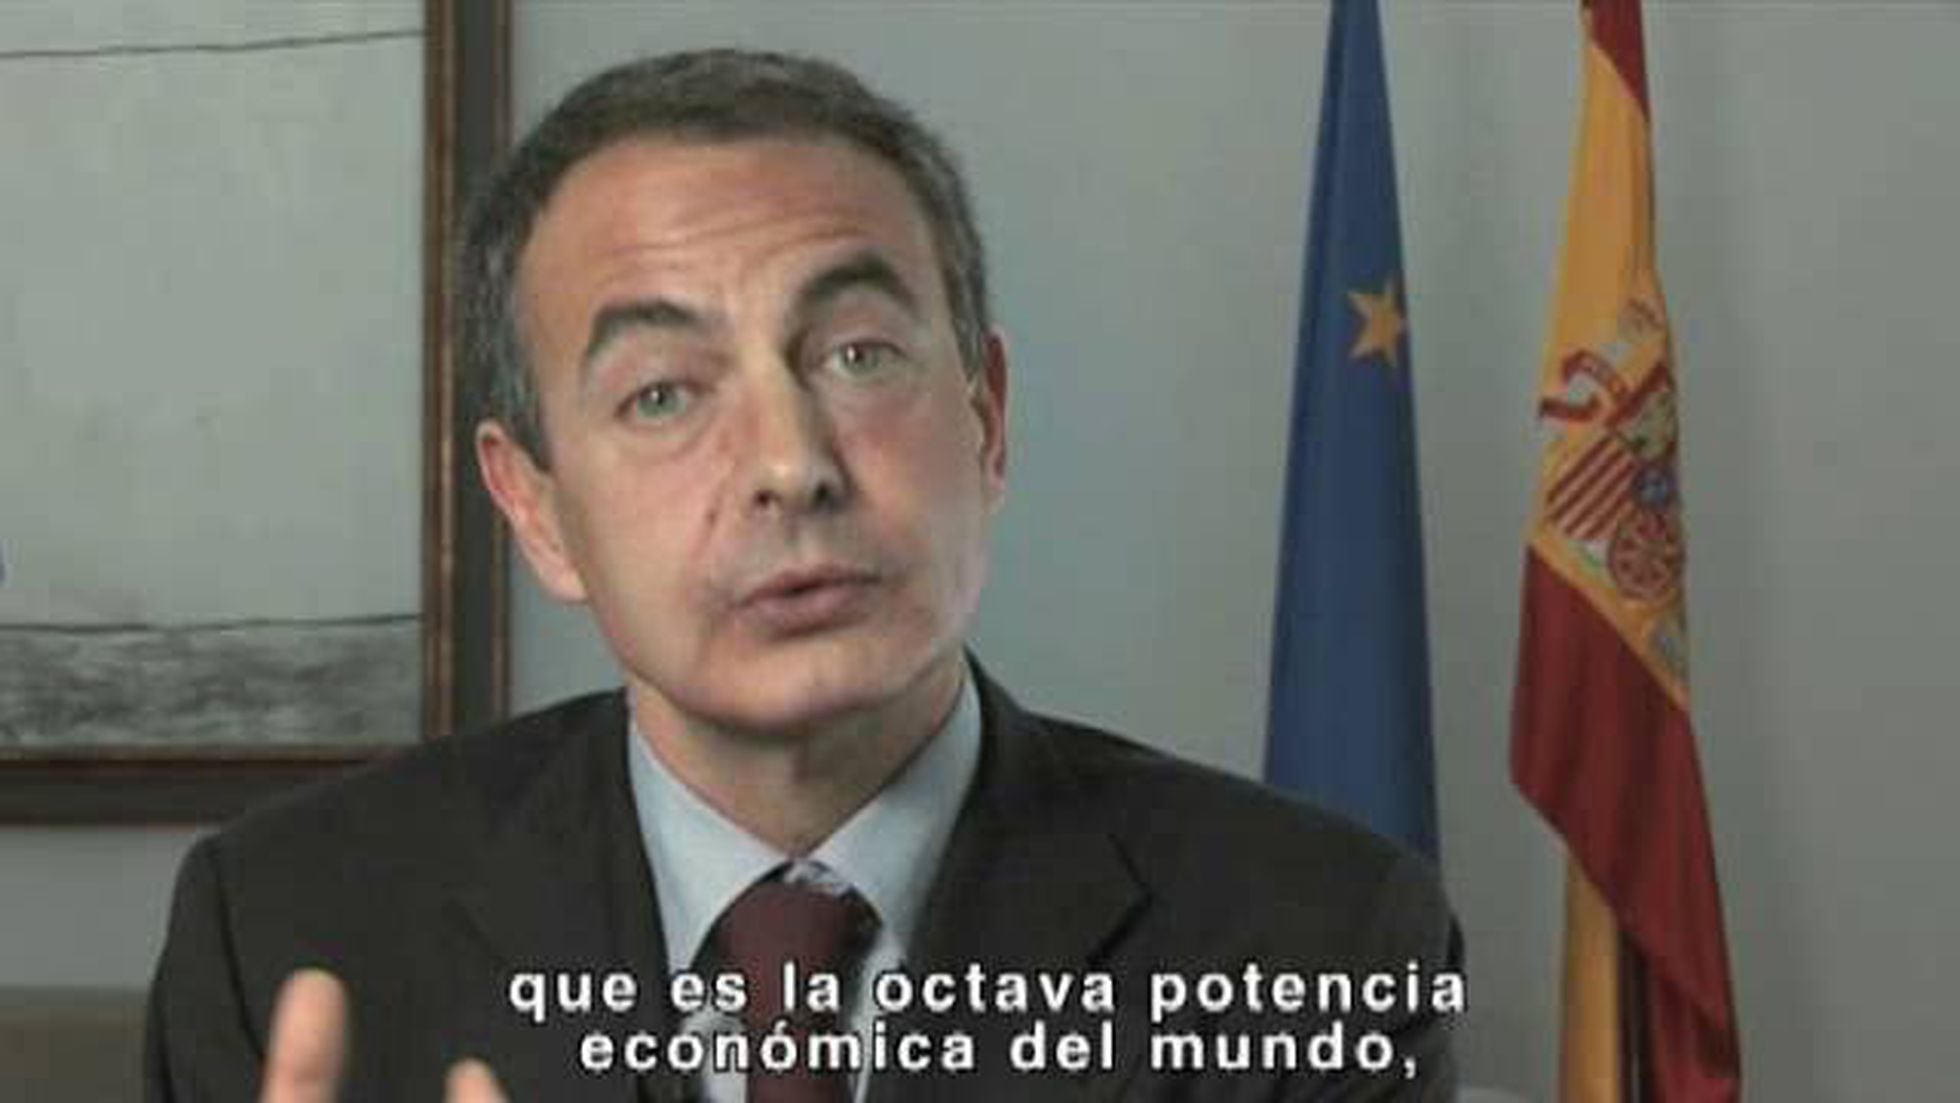 Zapatero en una 'web' su Plan E contra la crisis | Economía | EL PAÍS